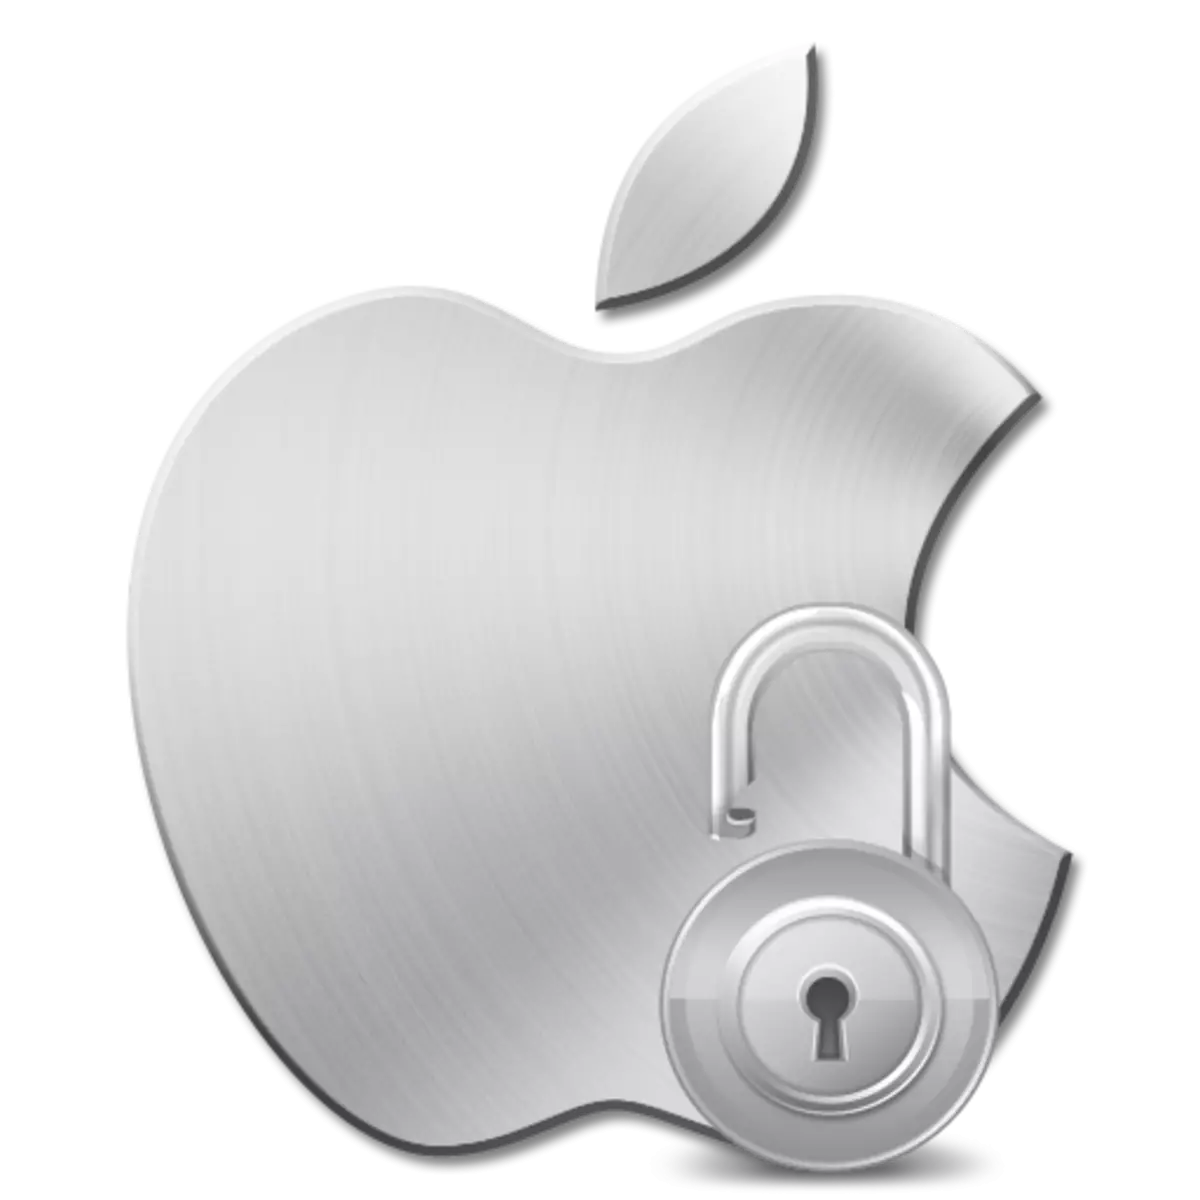 Apple ID ass duerch Sécherheetsgrënn gespaart: Wat maachen?